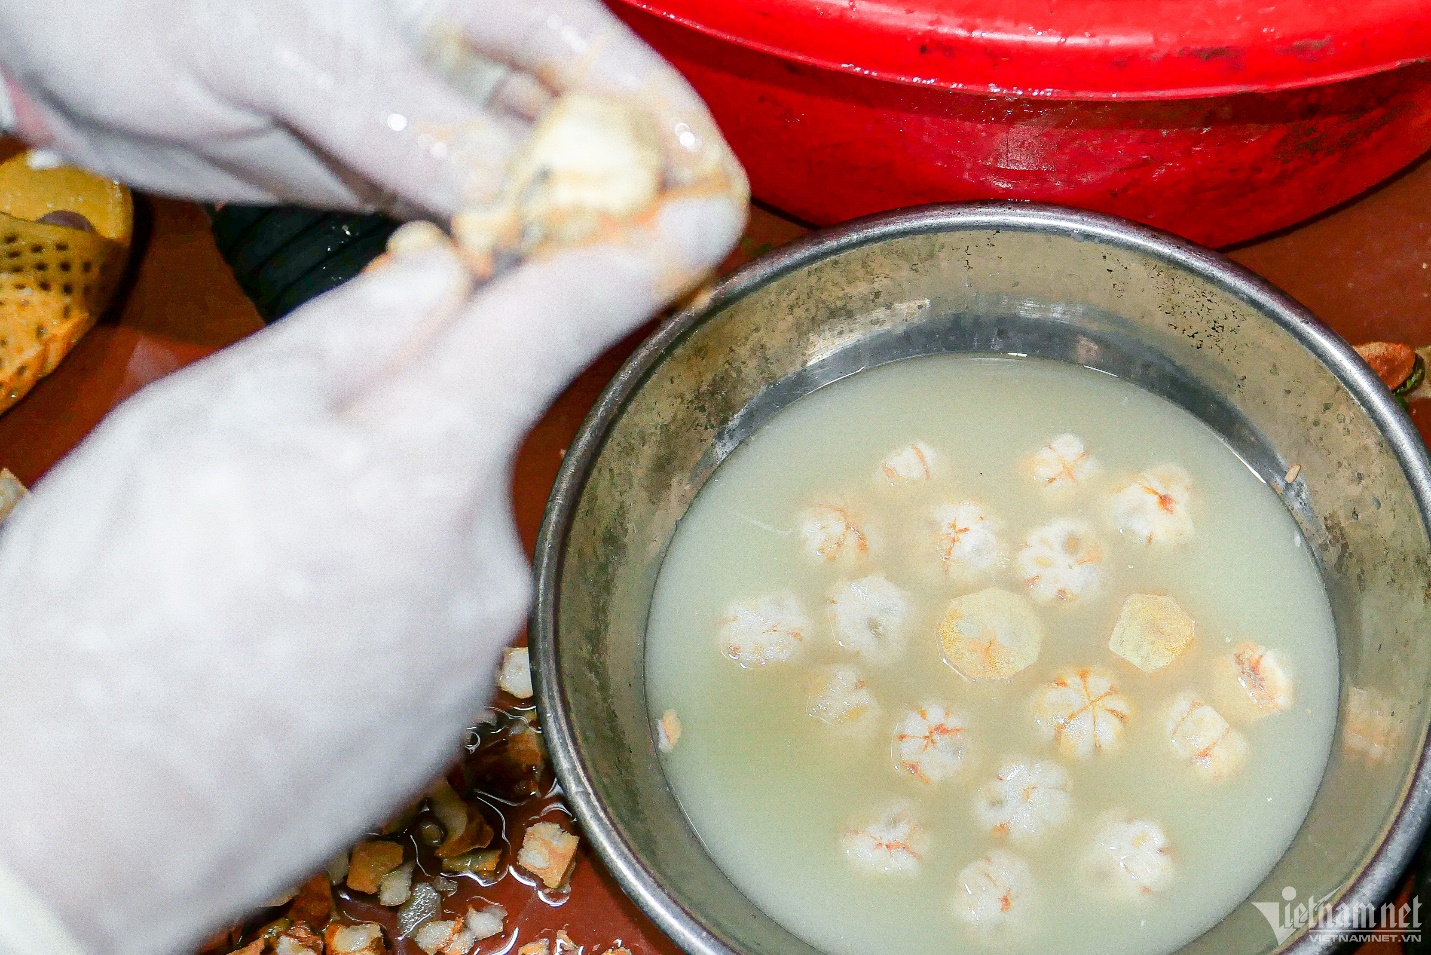 Đầu bếp 9x ở Hà Nội bán 400 suất gỏi gà măng cụt, thu trăm triệu mỗi ngày - 5